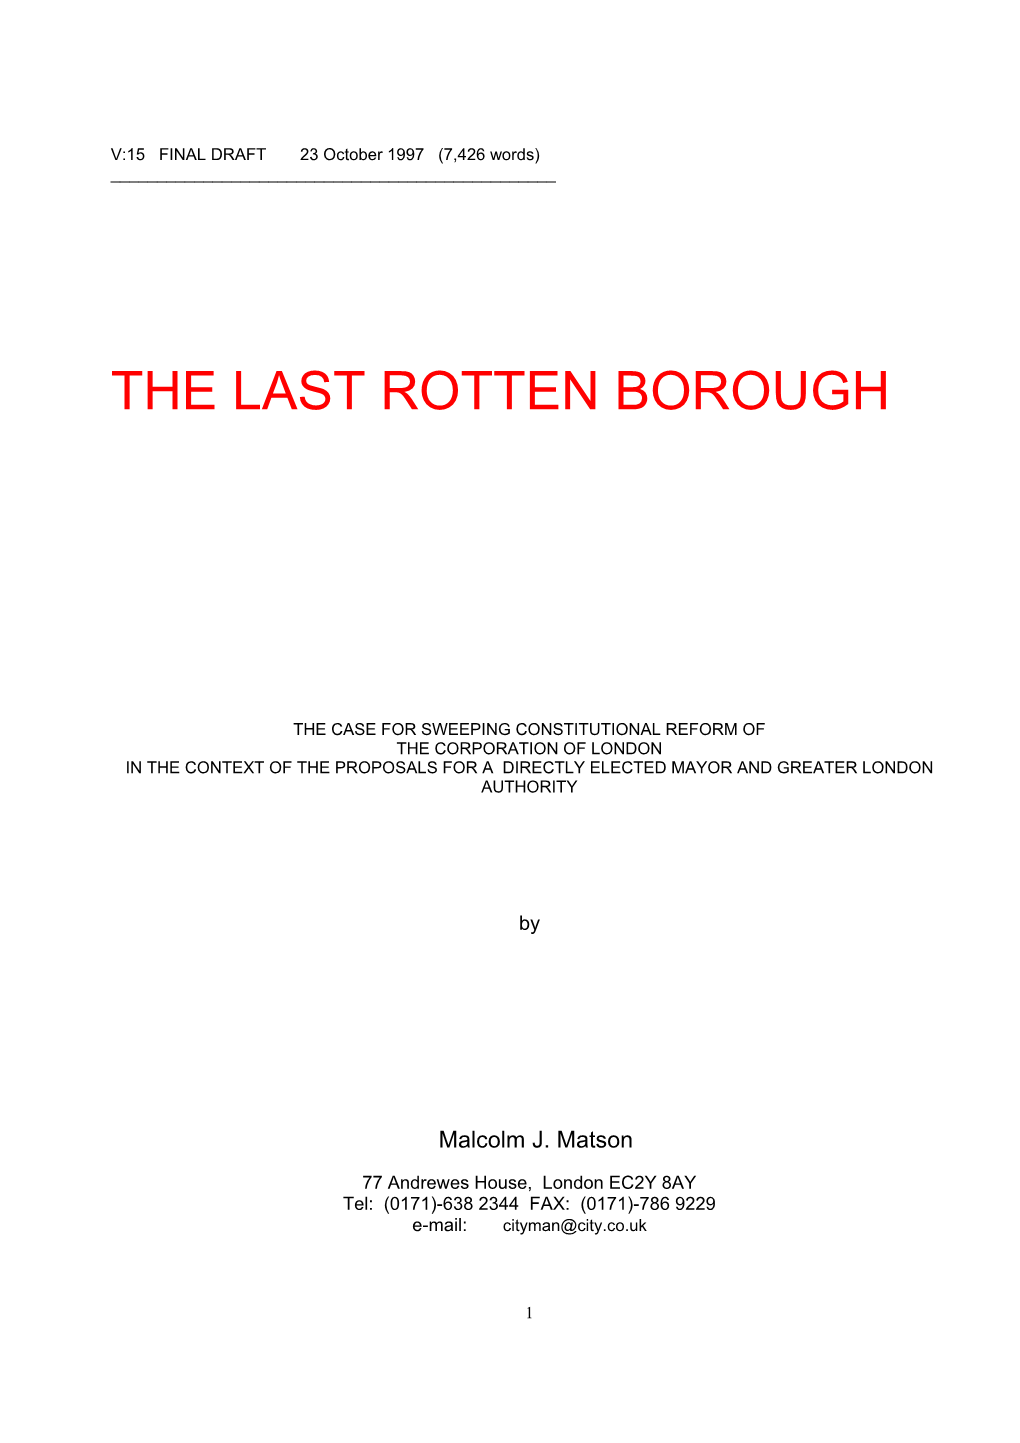 The Last Rotten Borough